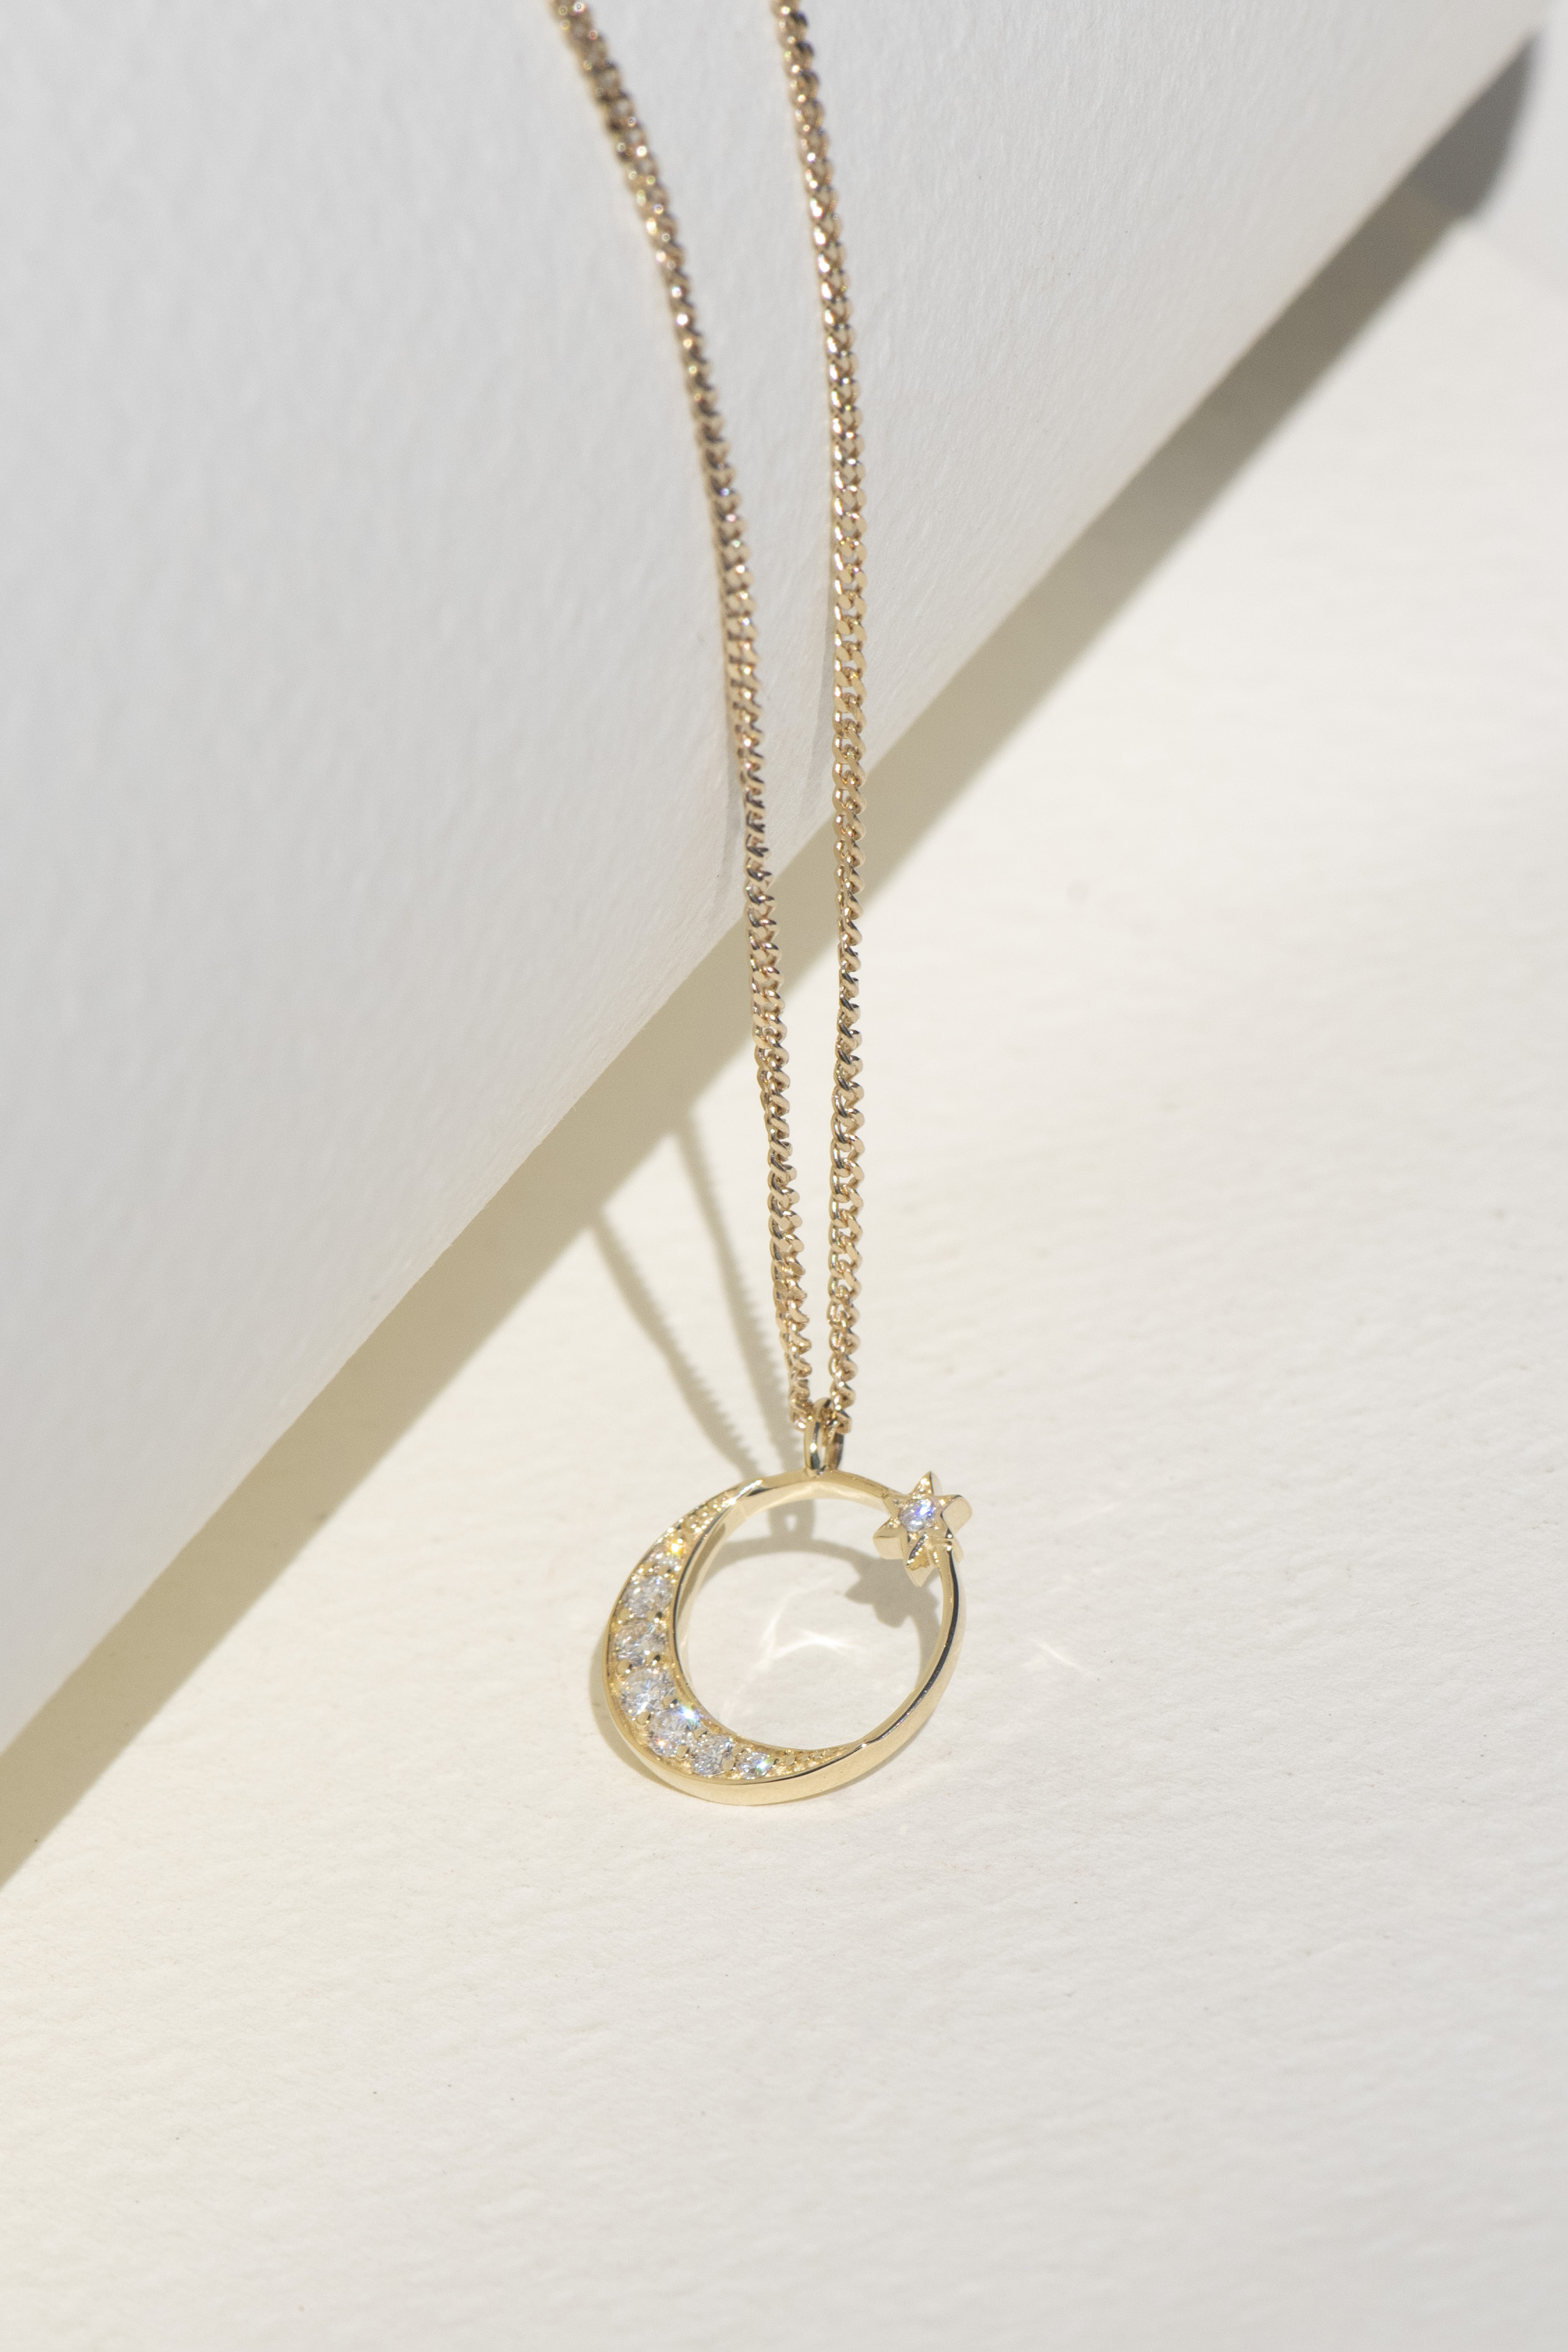 Celestia Diamond Gold Necklace